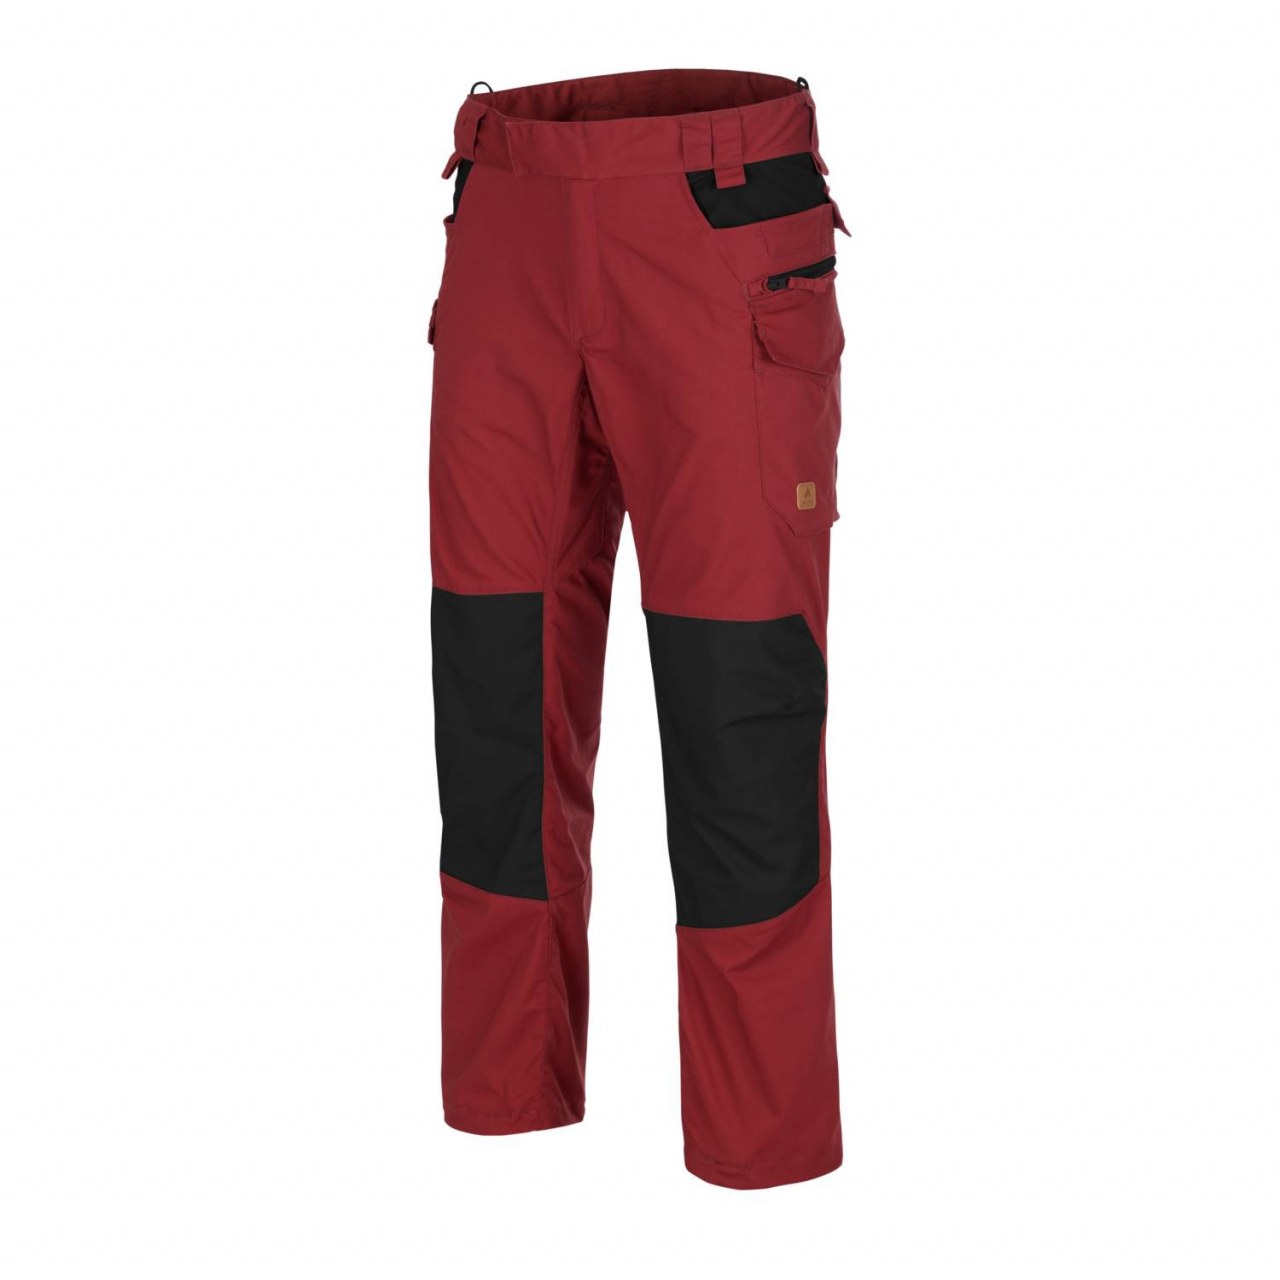 Kalhoty Helikon Pilgrim - červené-černé, 3XL